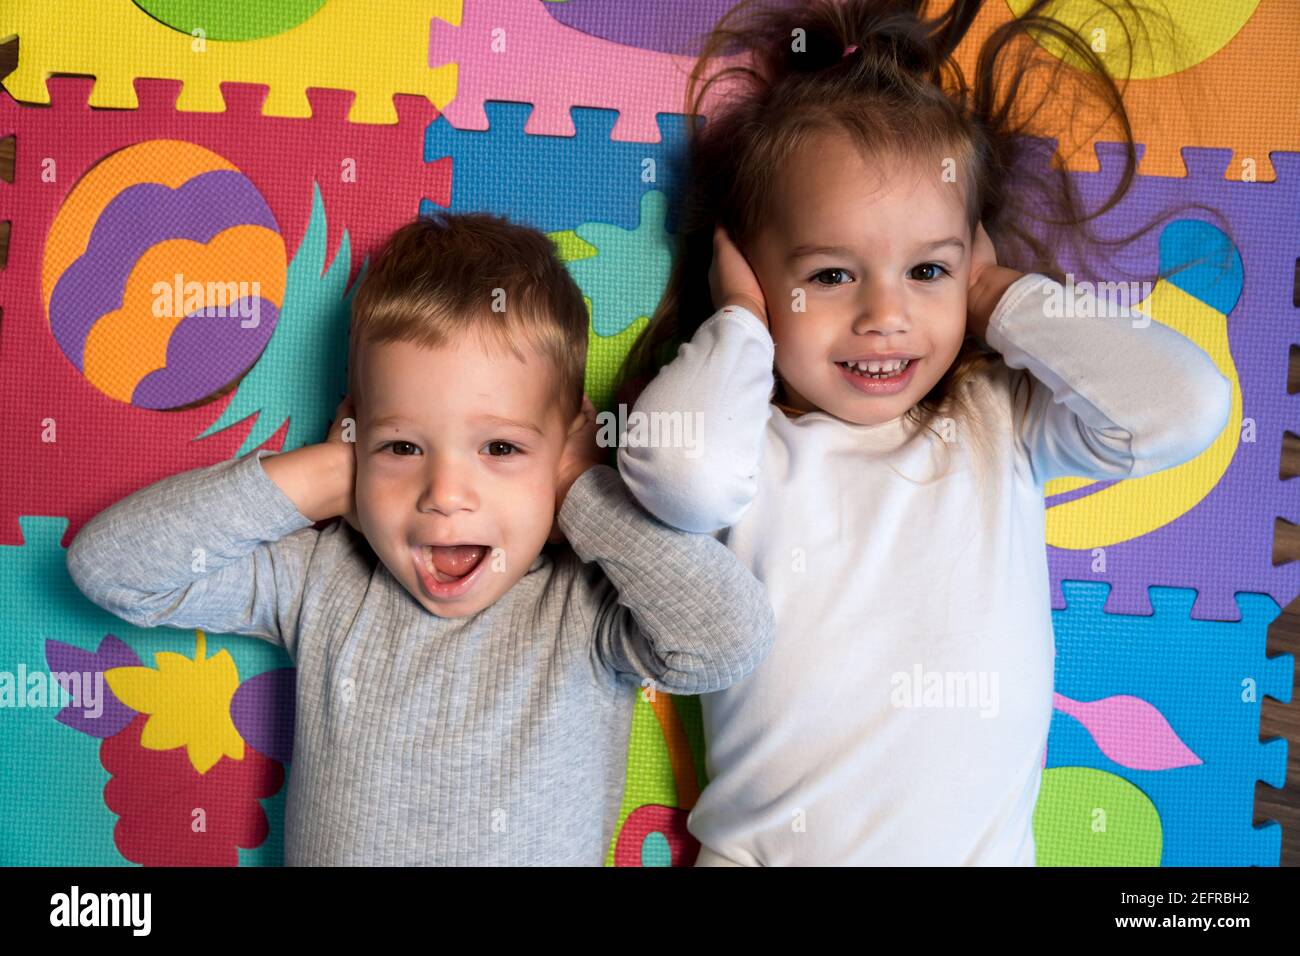 Kindheit, Familie Freundschaft, Spiele - close up Portrait zwei lustige Freude glücklich lächelnd kleines Kleinkind peschool Kinder Geschwister Zwillinge Bruder mit Schwester Stockfoto